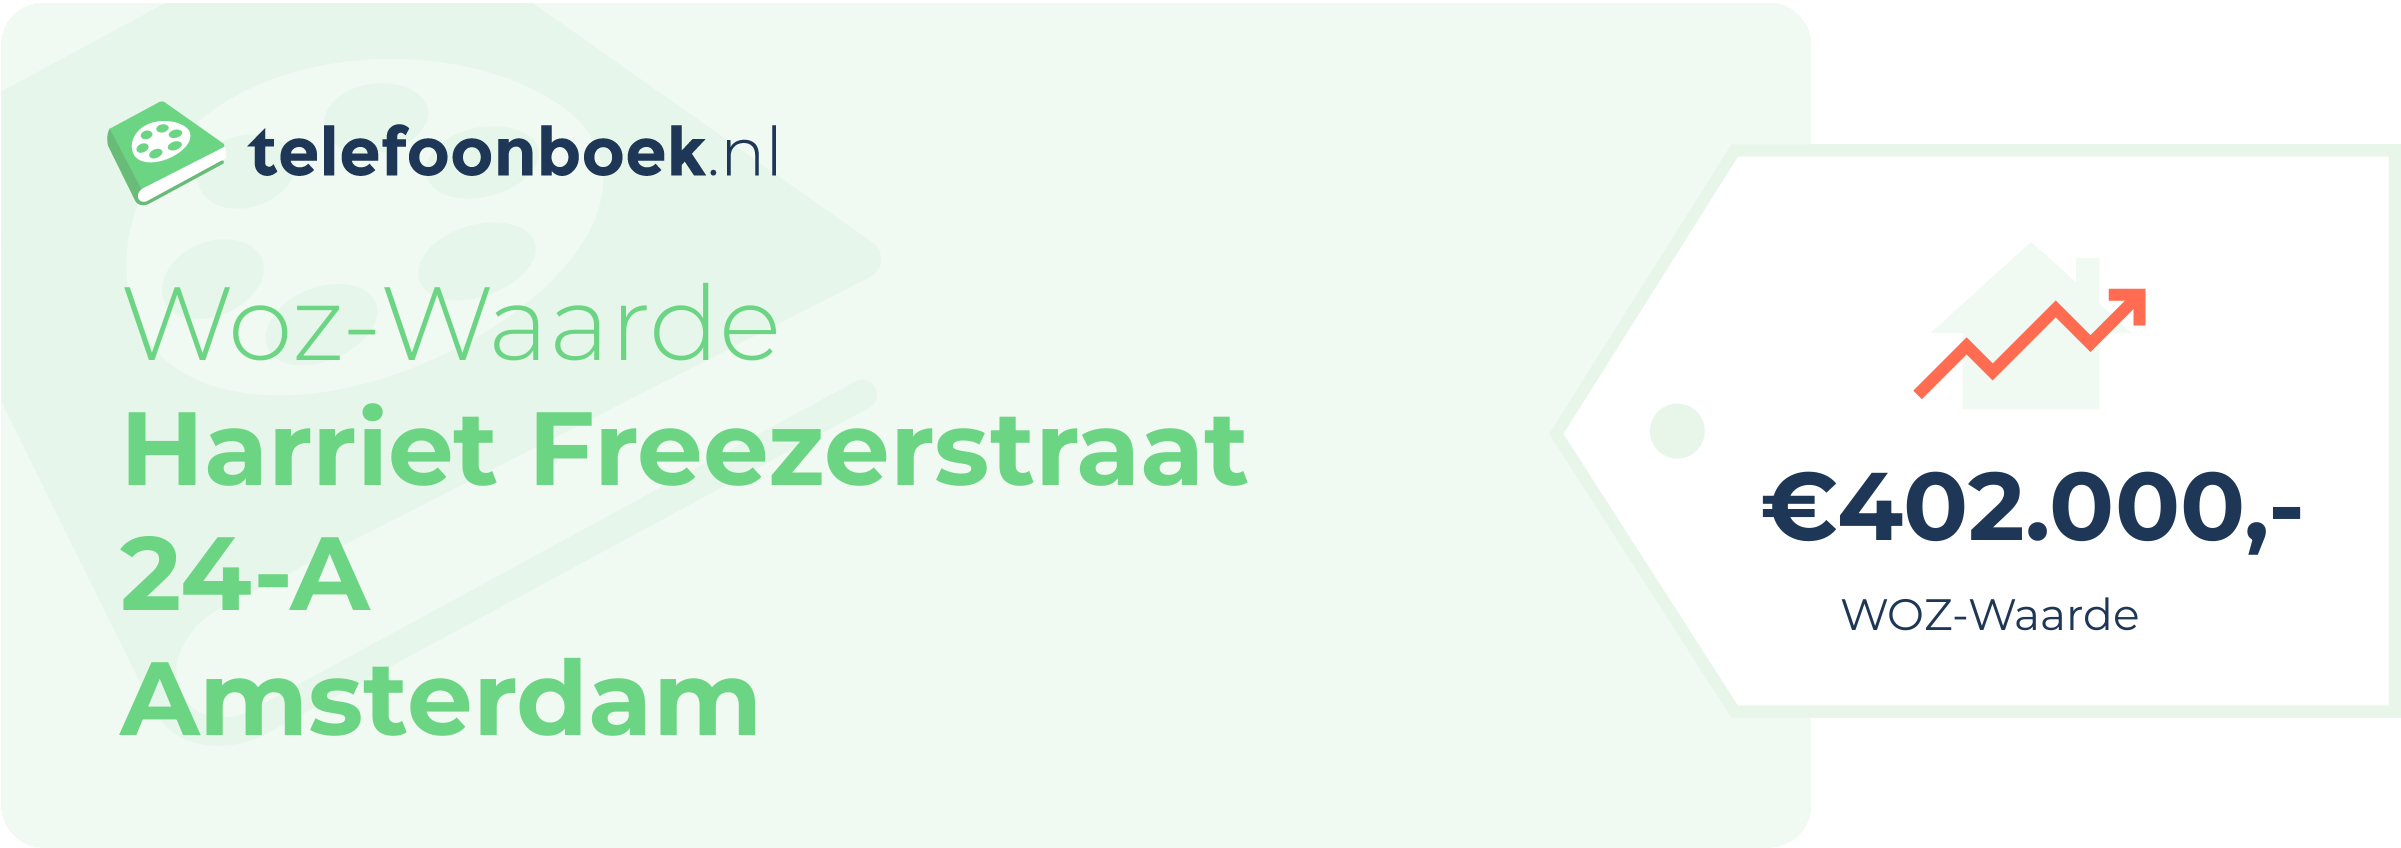 WOZ-waarde Harriet Freezerstraat 24-A Amsterdam